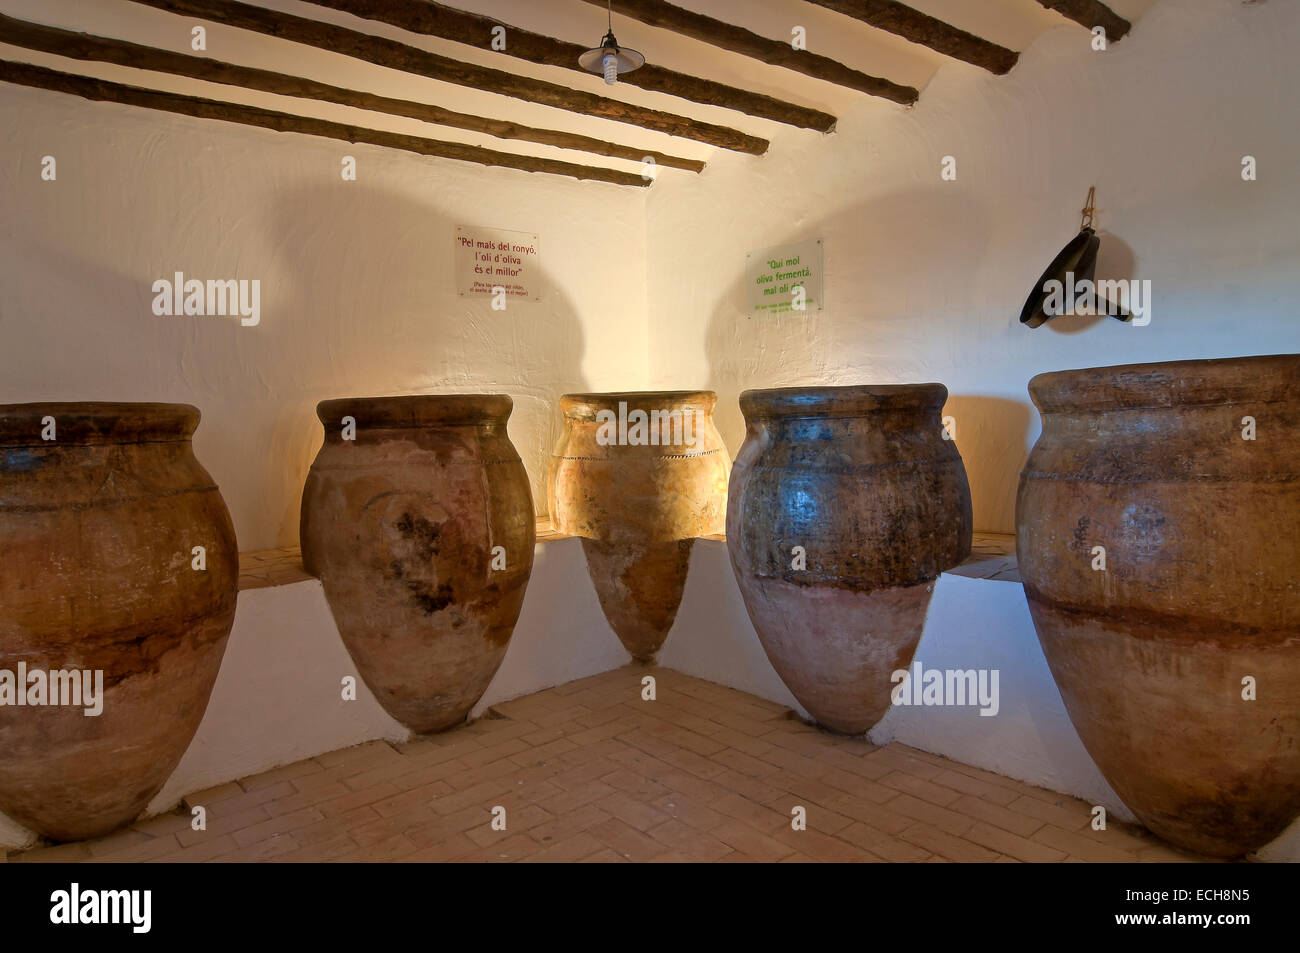 Museo della cultura dell'Oliva, Puente del Obispo-Baeza, Jaen provincia, regione dell'Andalusia, Spagna, Europa Foto Stock